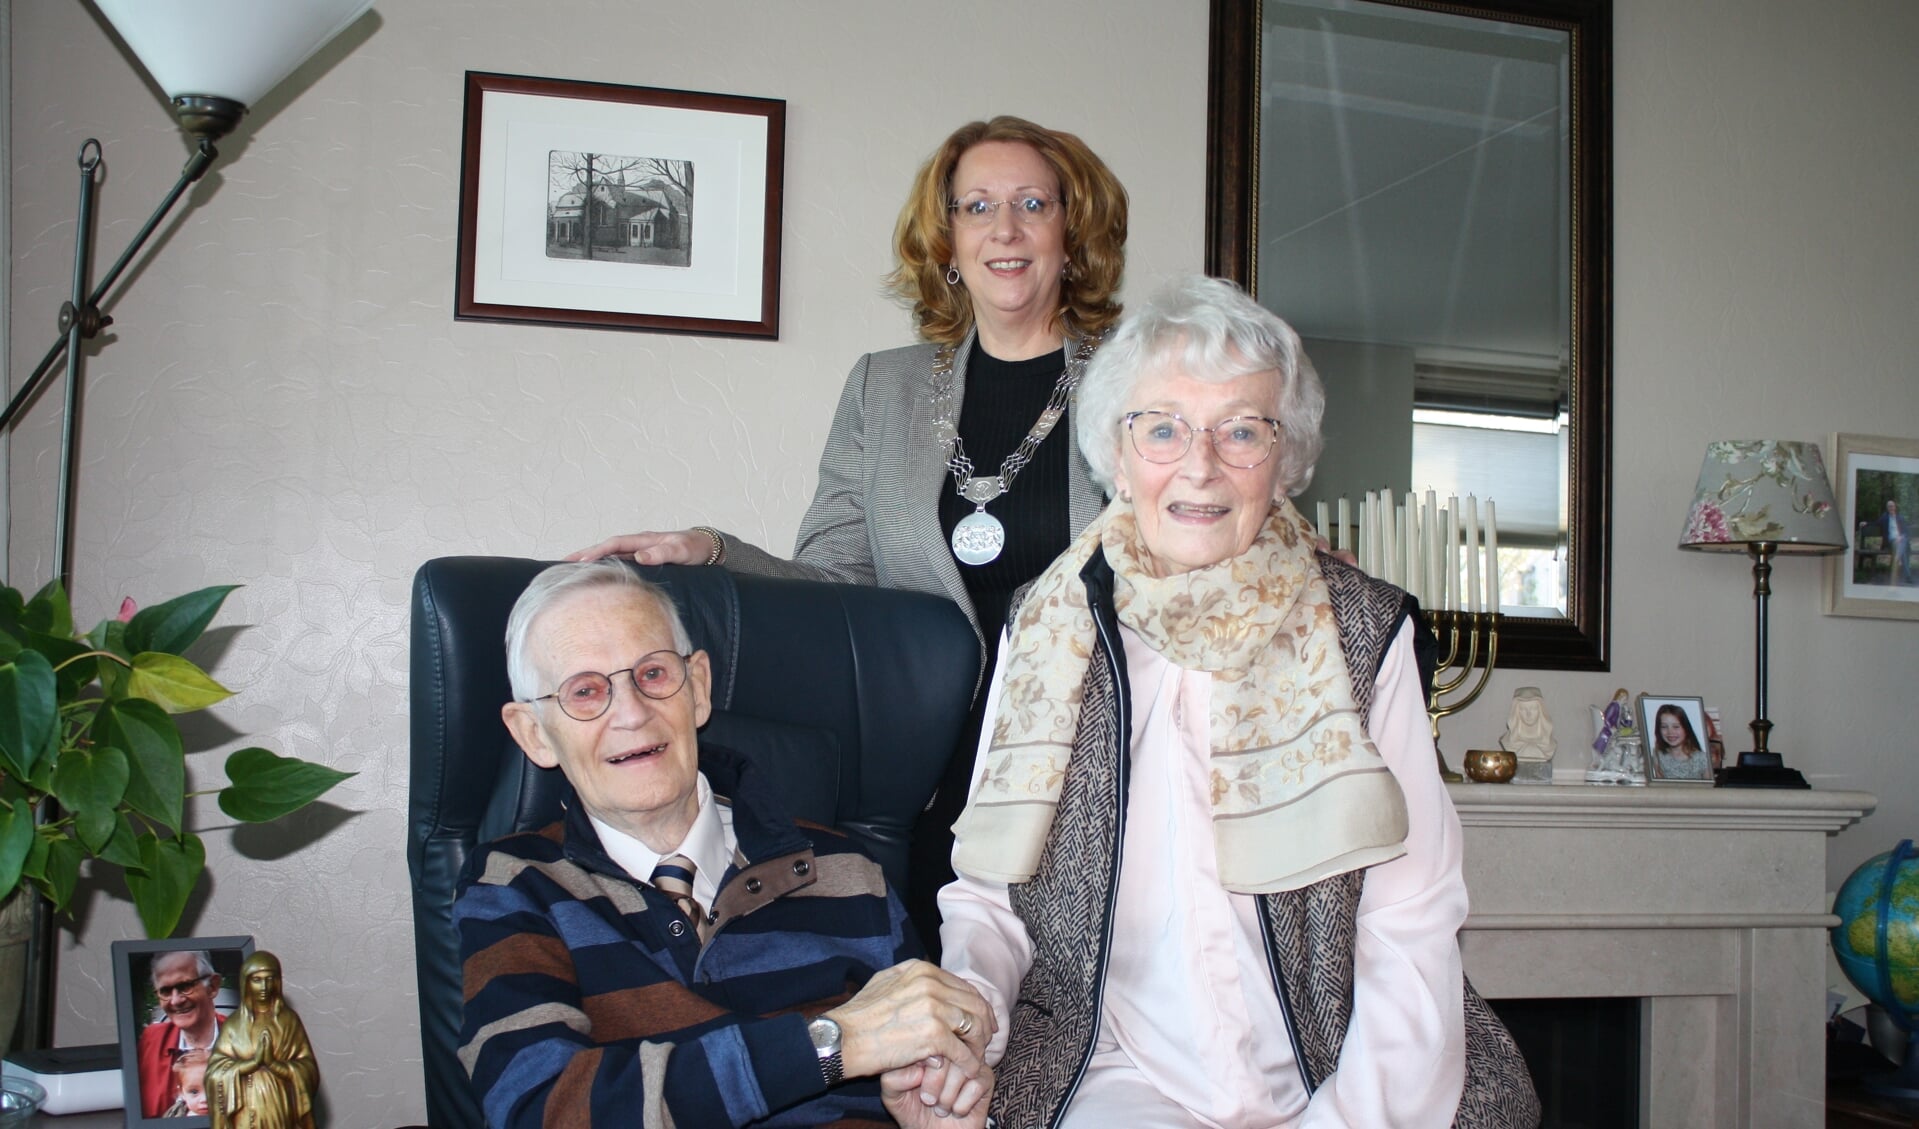 Het echtpaar Hoek is 60 jaar getrouwd en krijgt bezoek van de burgemeester. | Tekst en foto: Piet de Boer